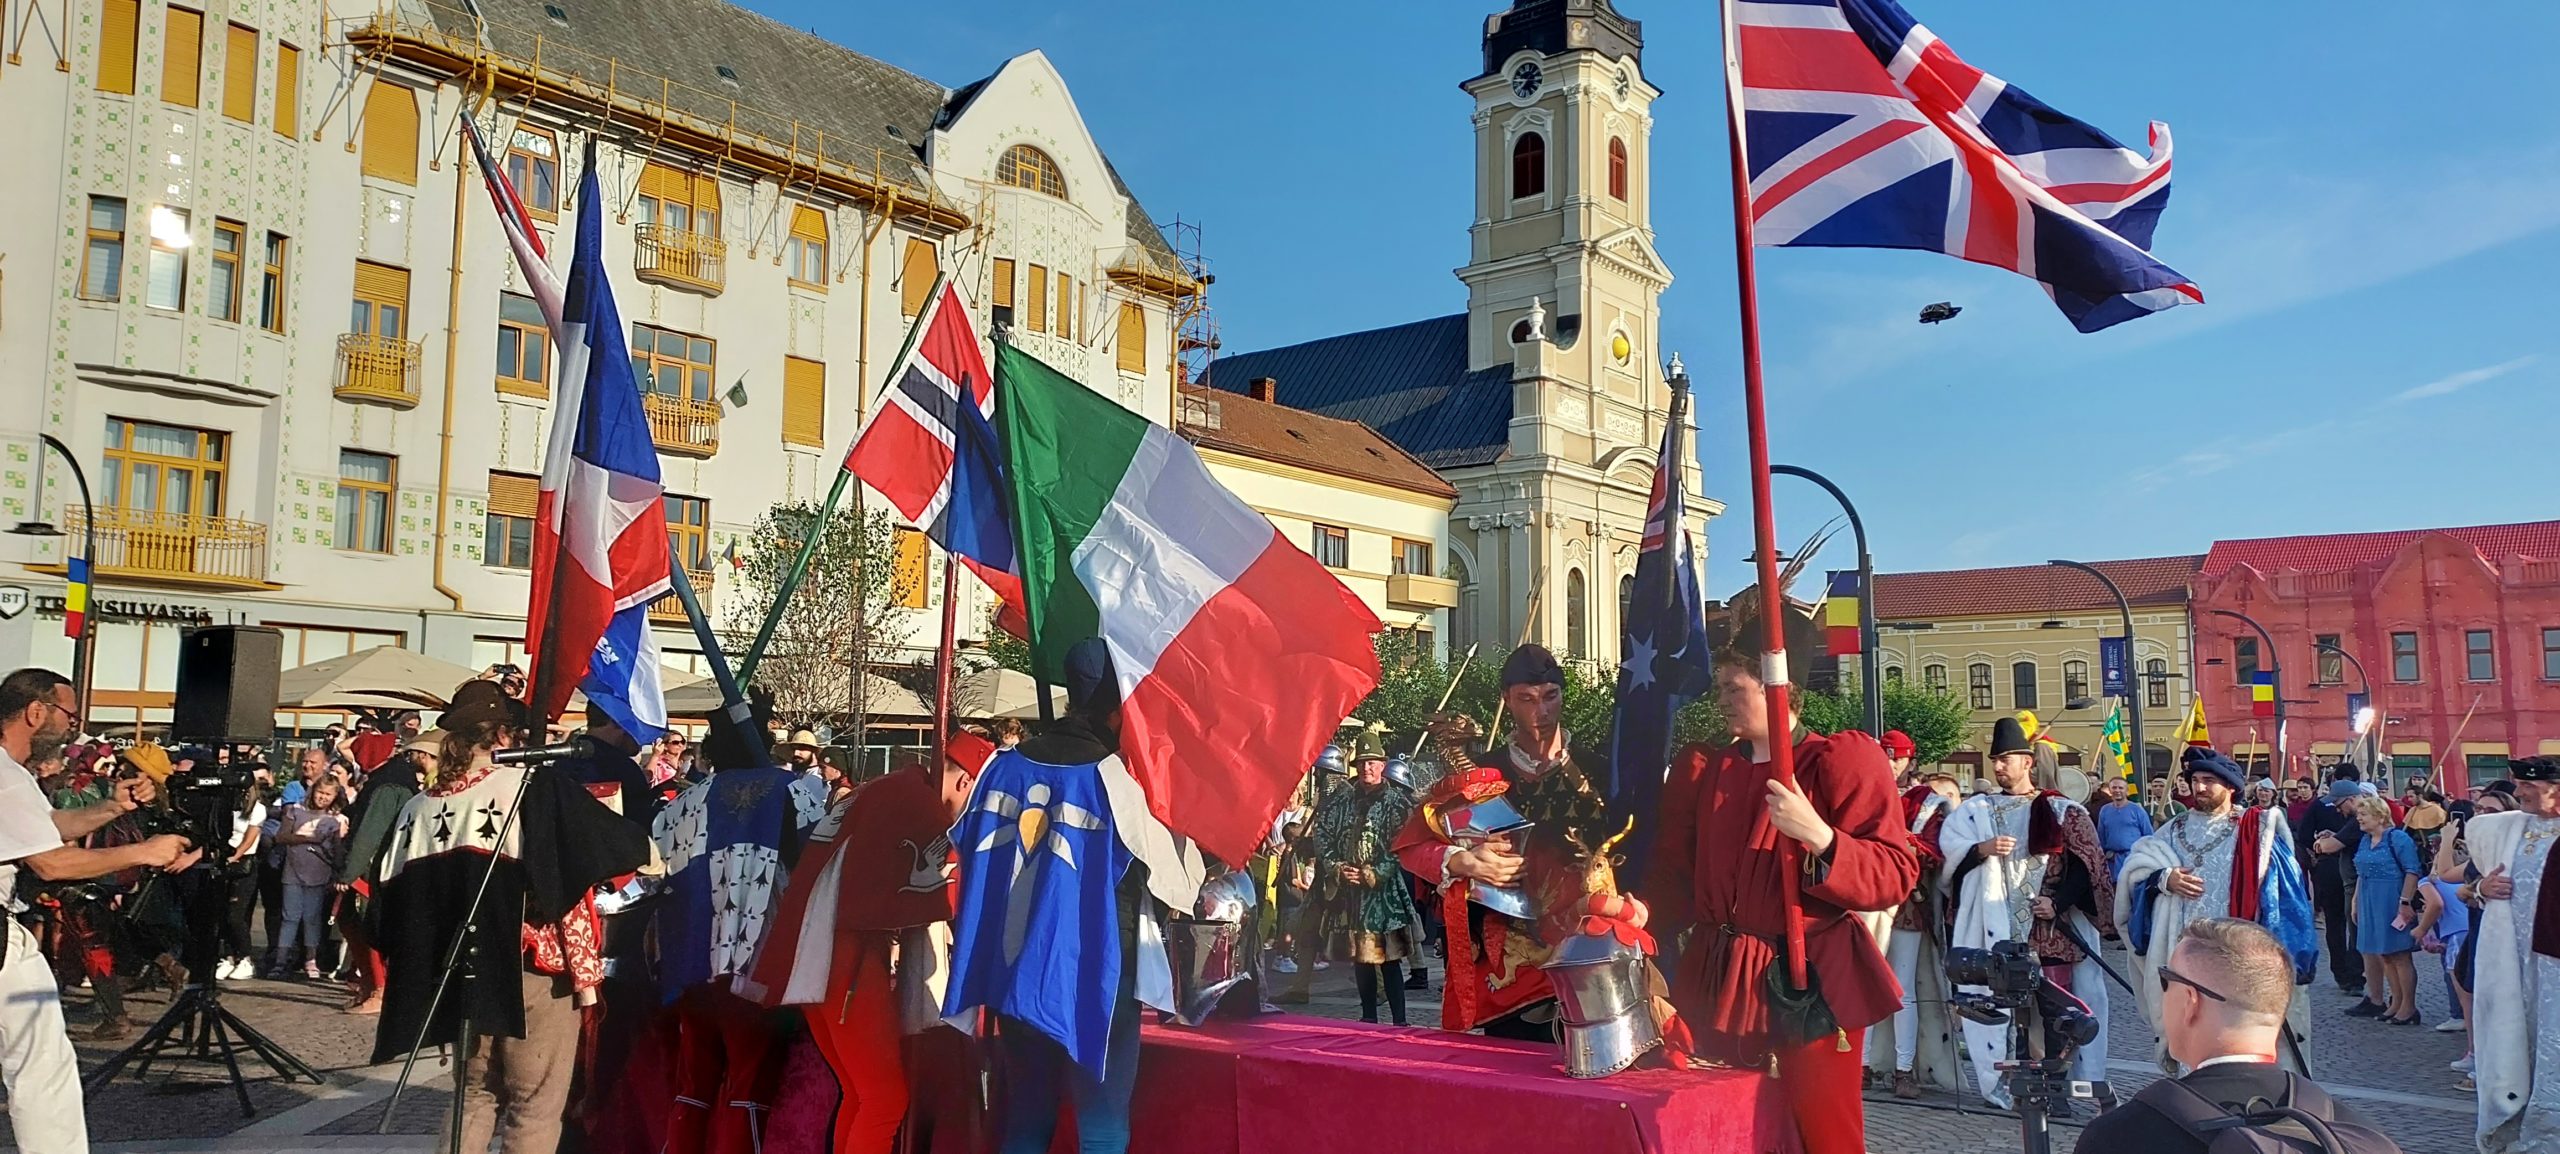 festivalul medieval oradea (8)